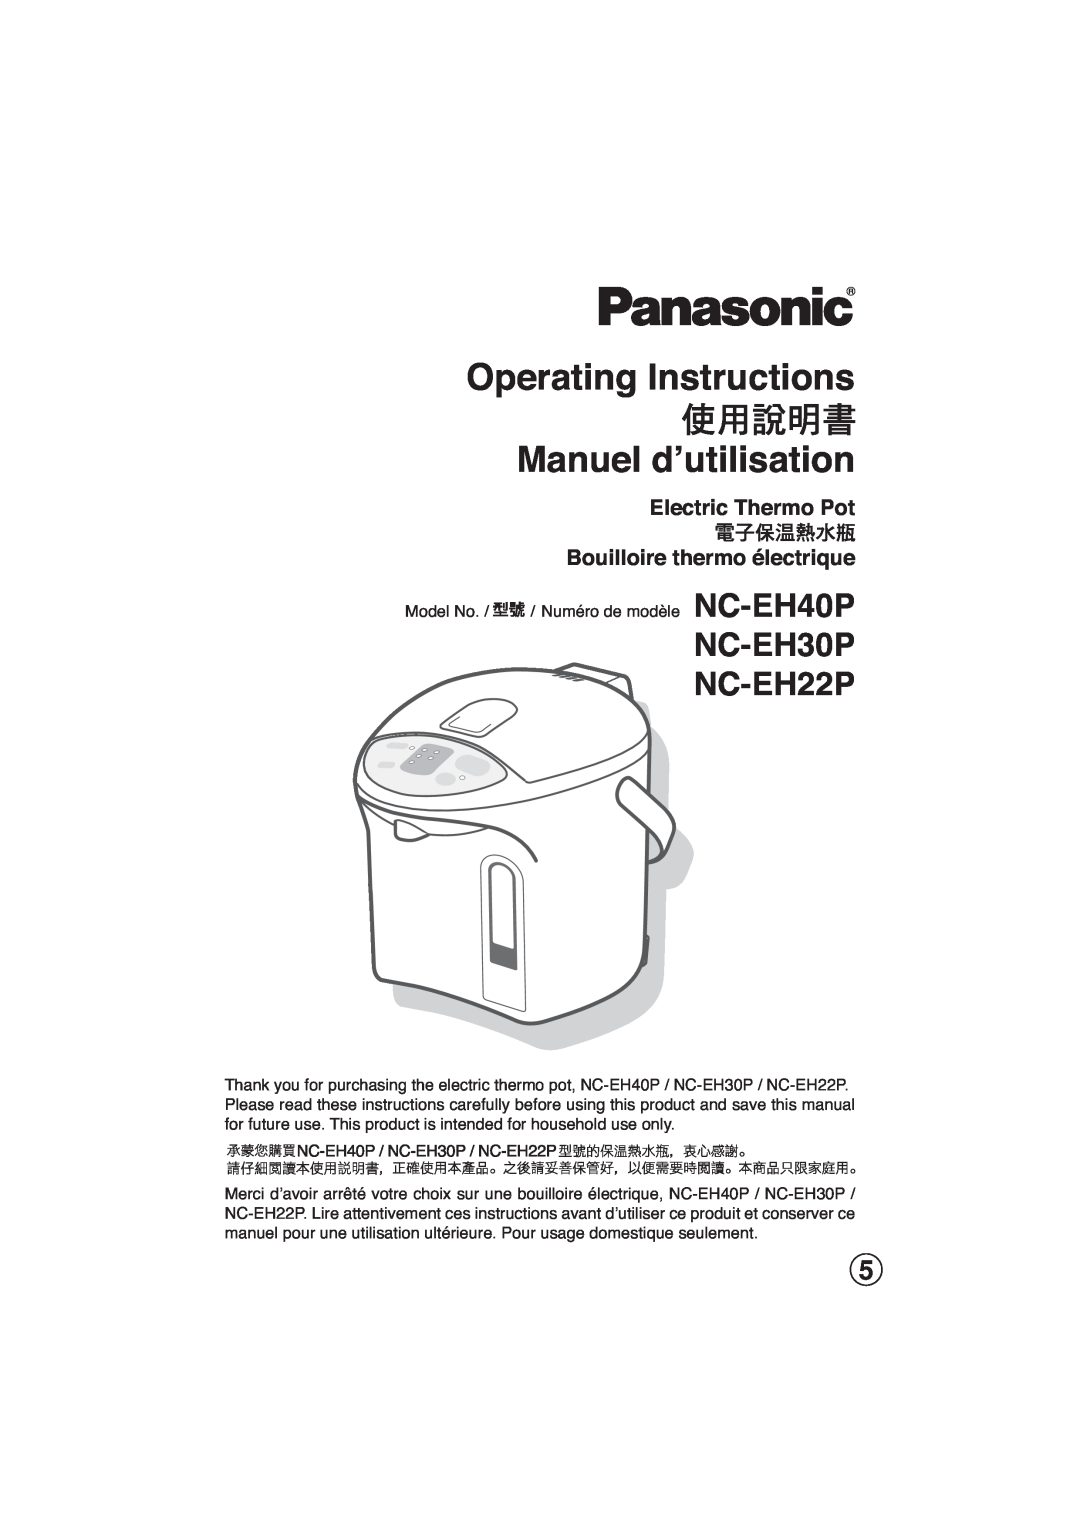 Panasonic NC-EH40P manuel dutilisation NC-EH30P NC-EH22P, Electric Thermo Pot Bouilloire thermo électrique 